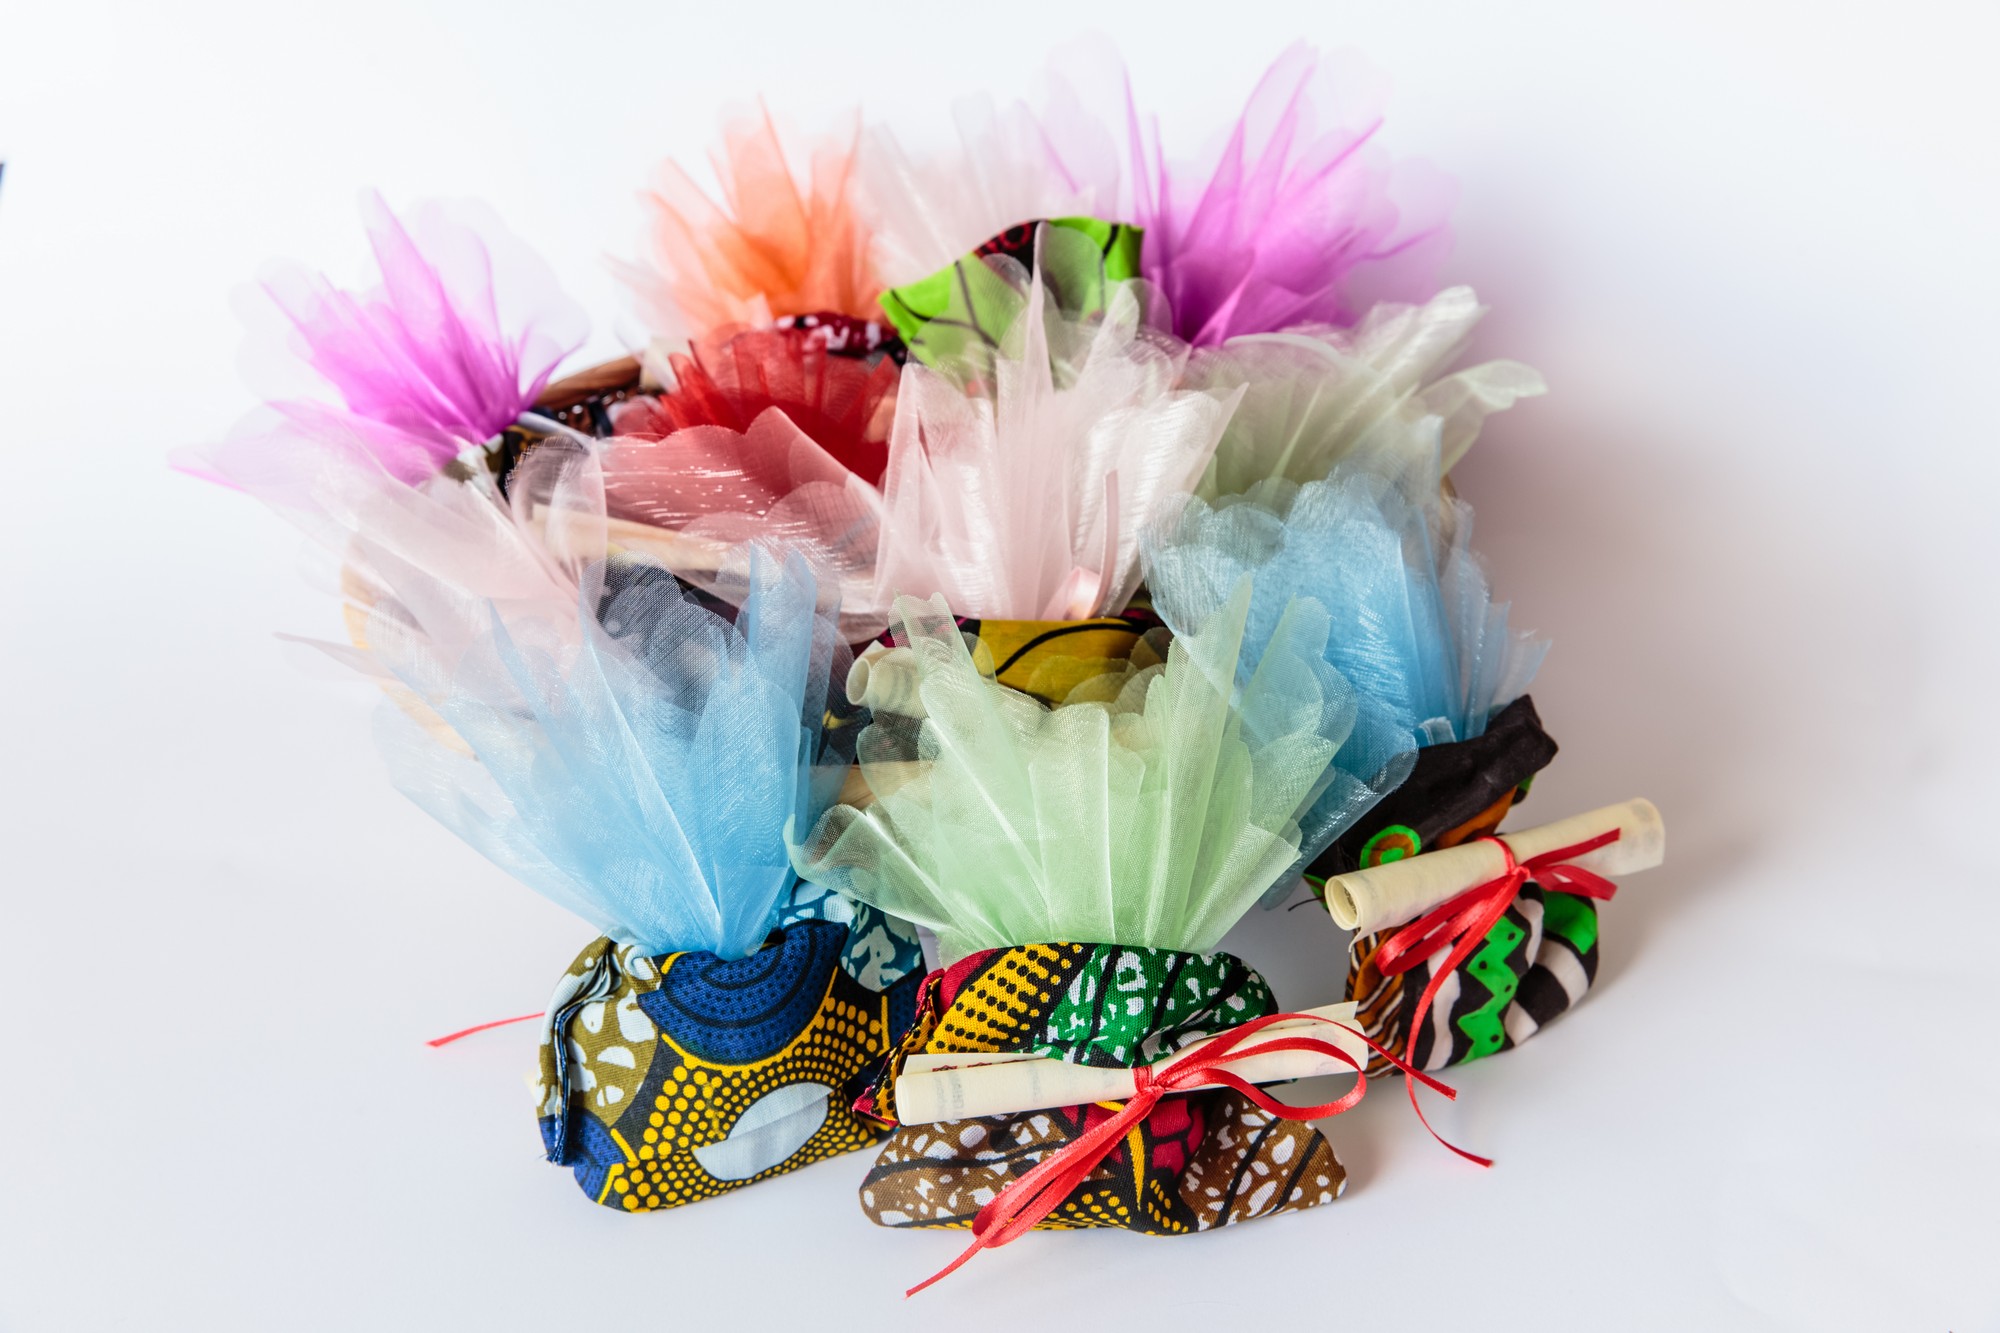 sacchettini africani confezionati con tulle colorati e pergamena arrotolata